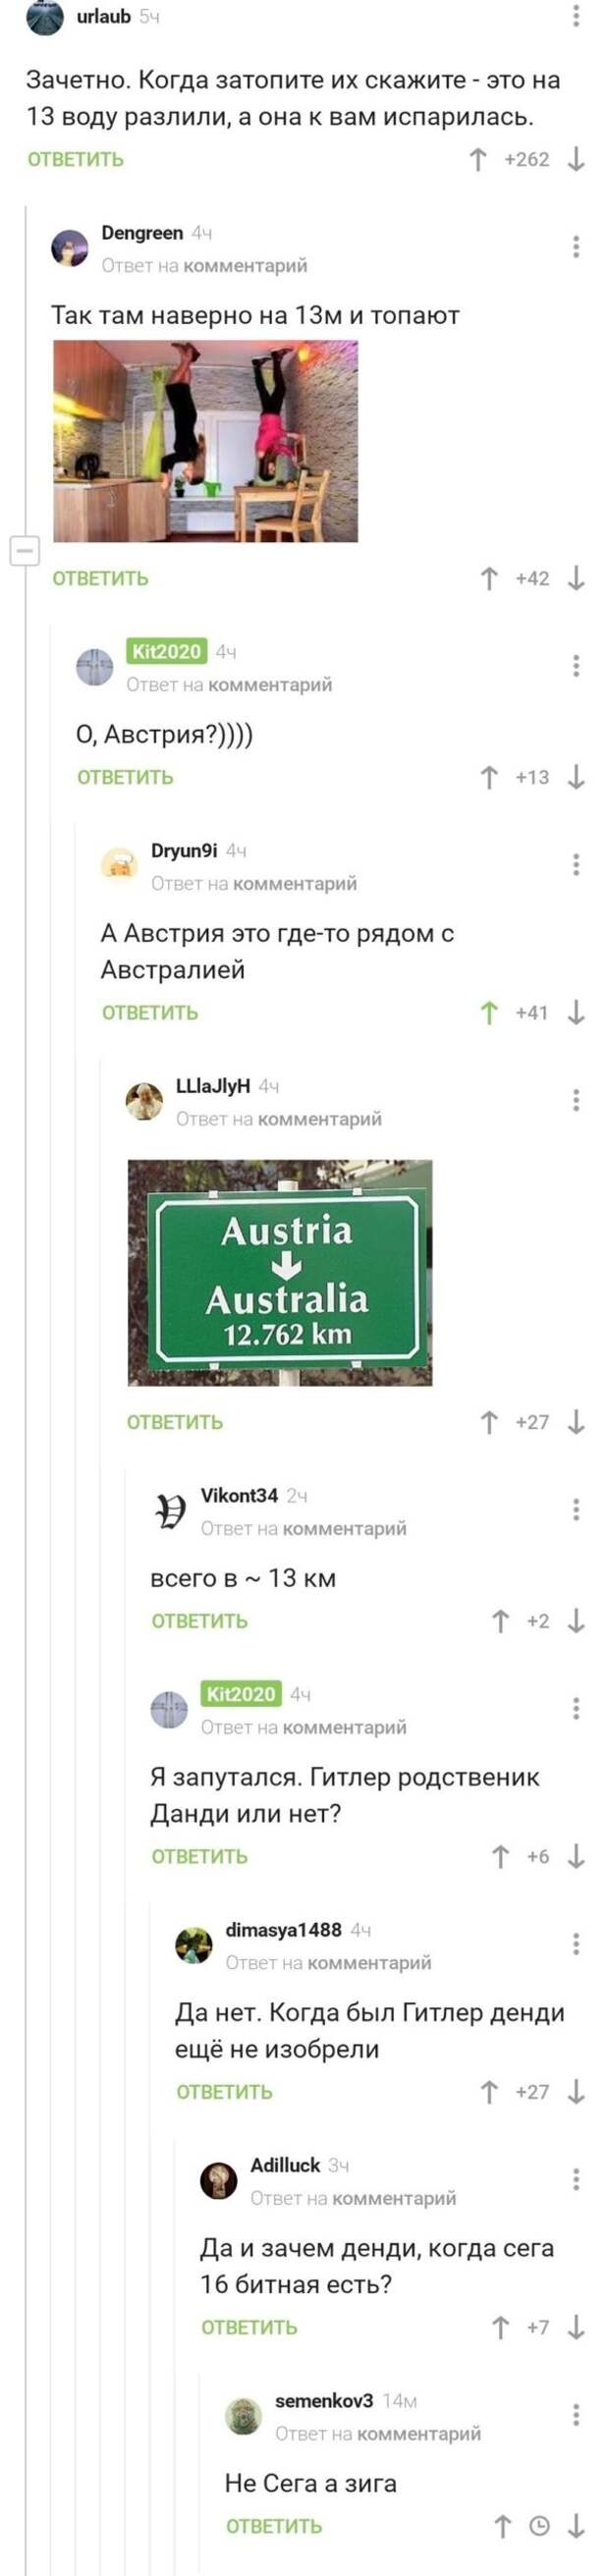 19. Австрия или Австралия?